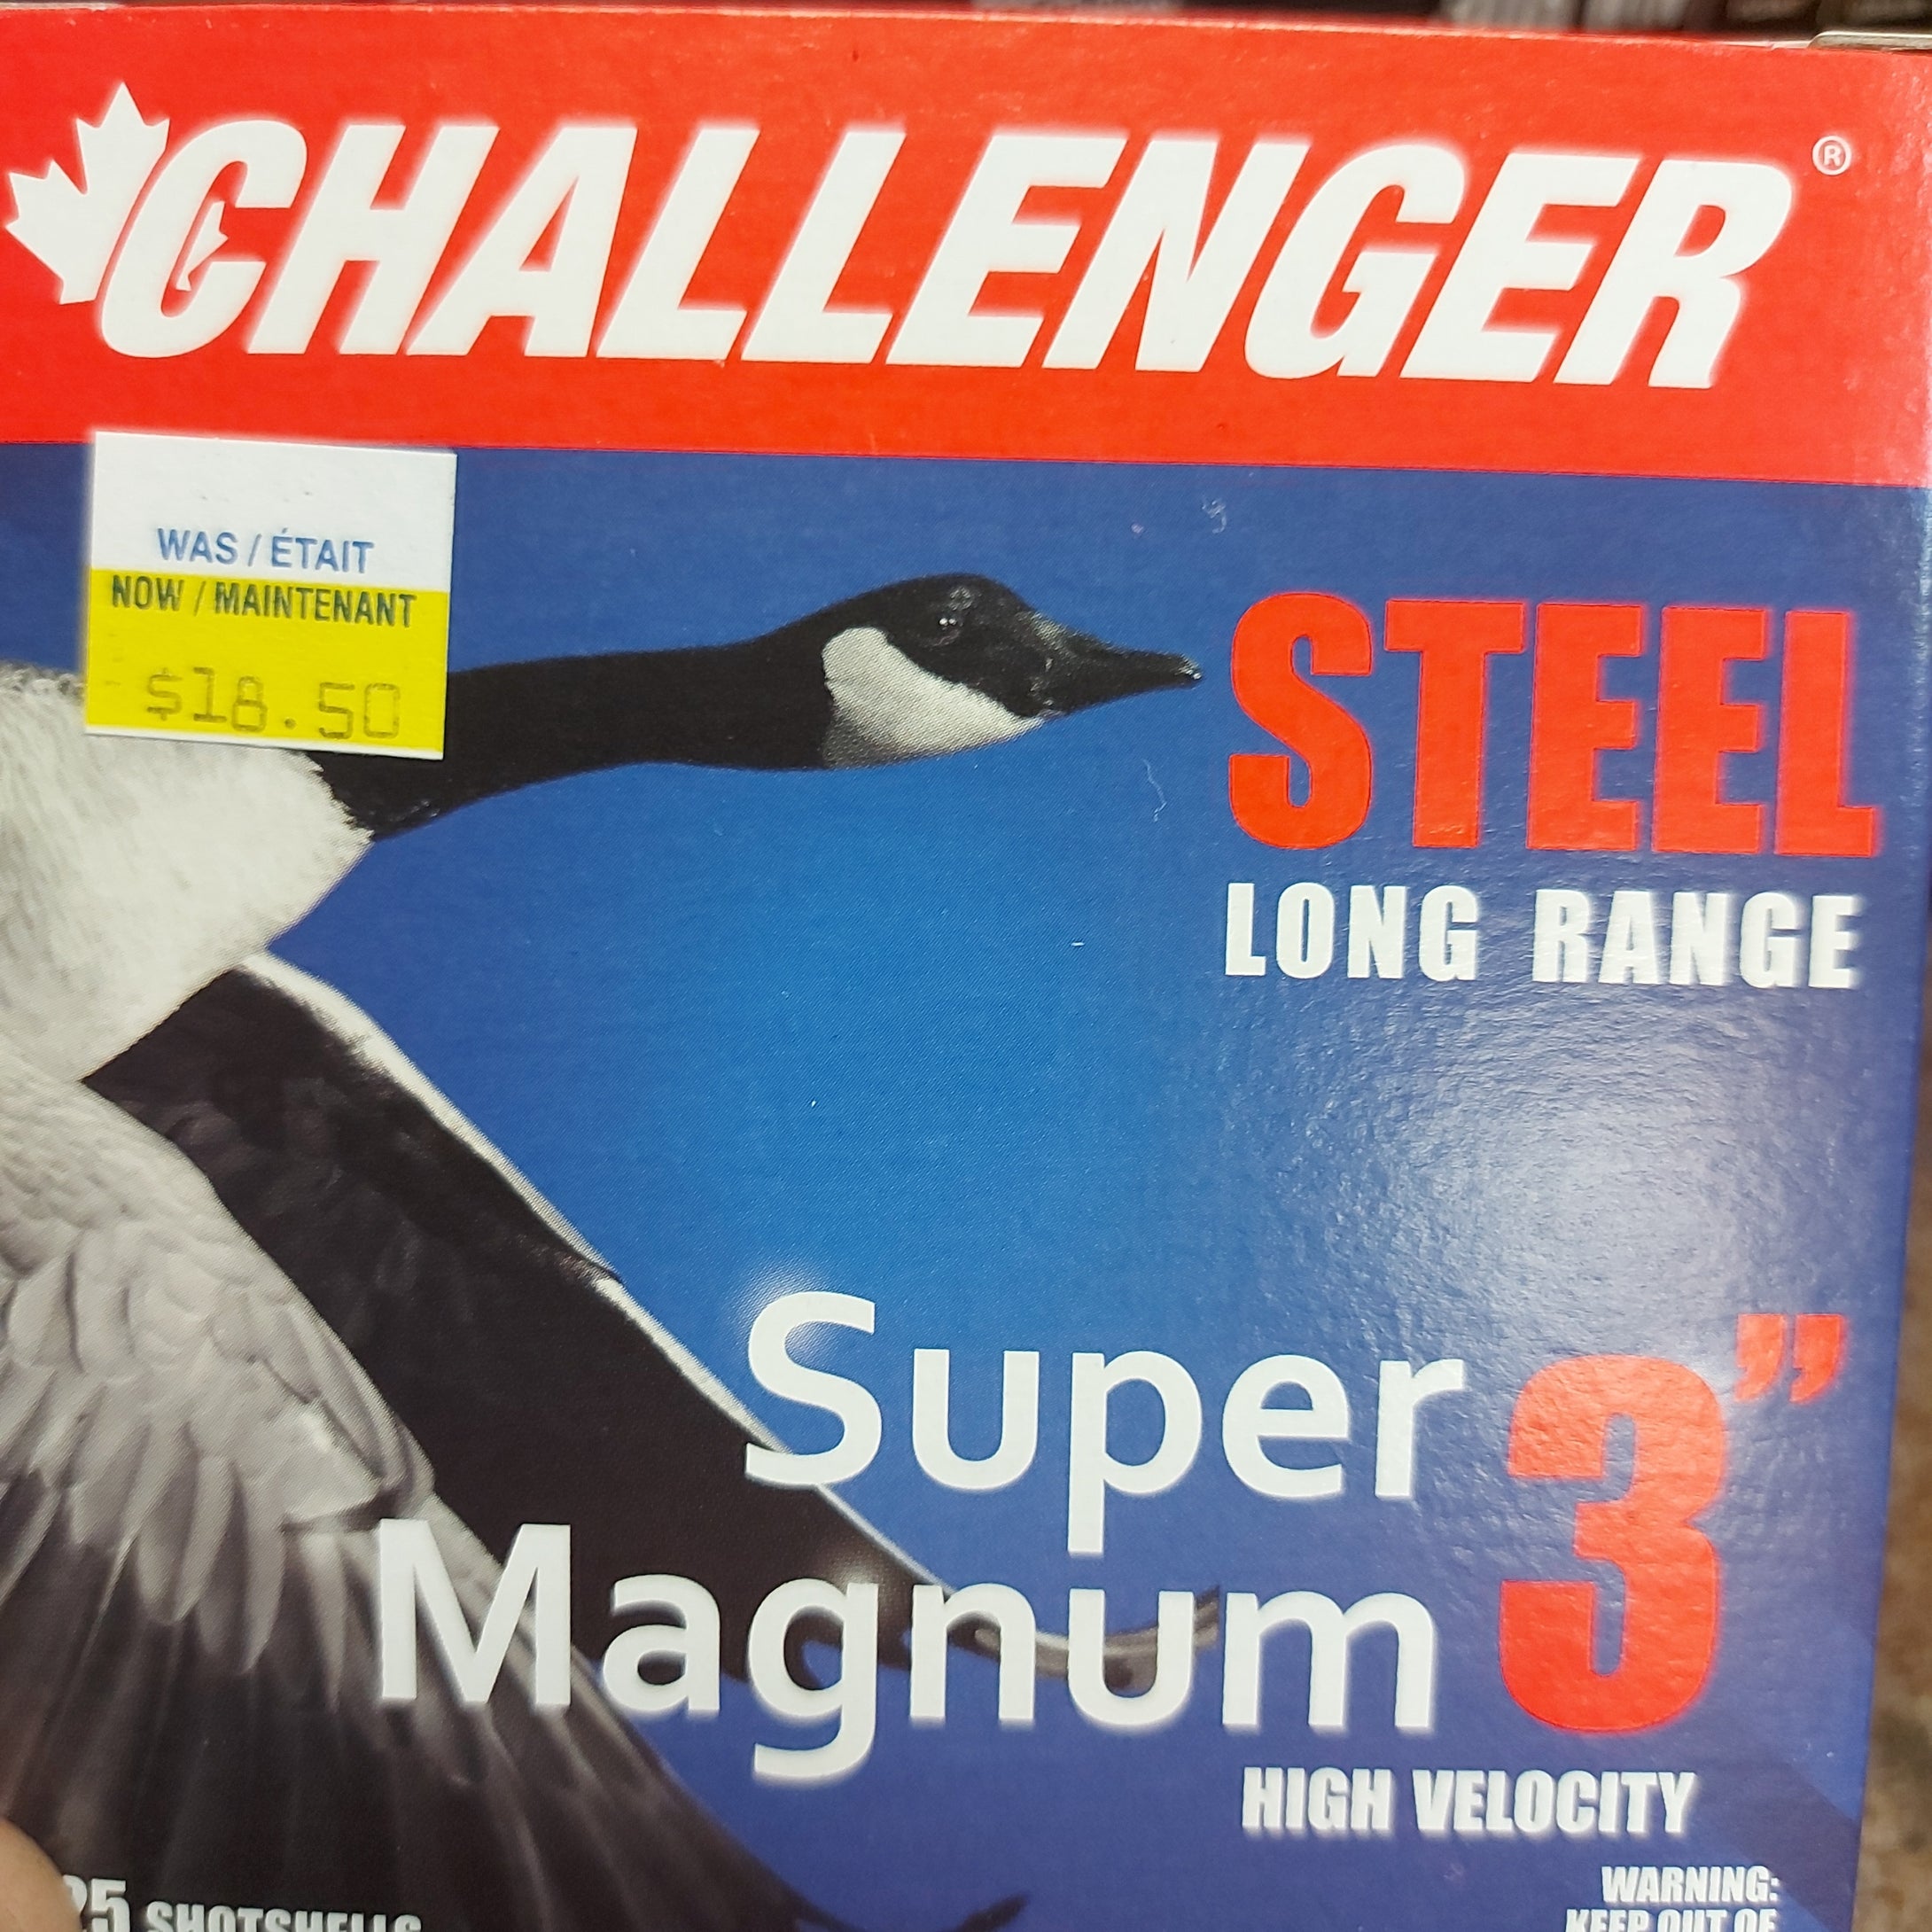 12 Ga Challenger steel #2 long-range super magnum  25 shells